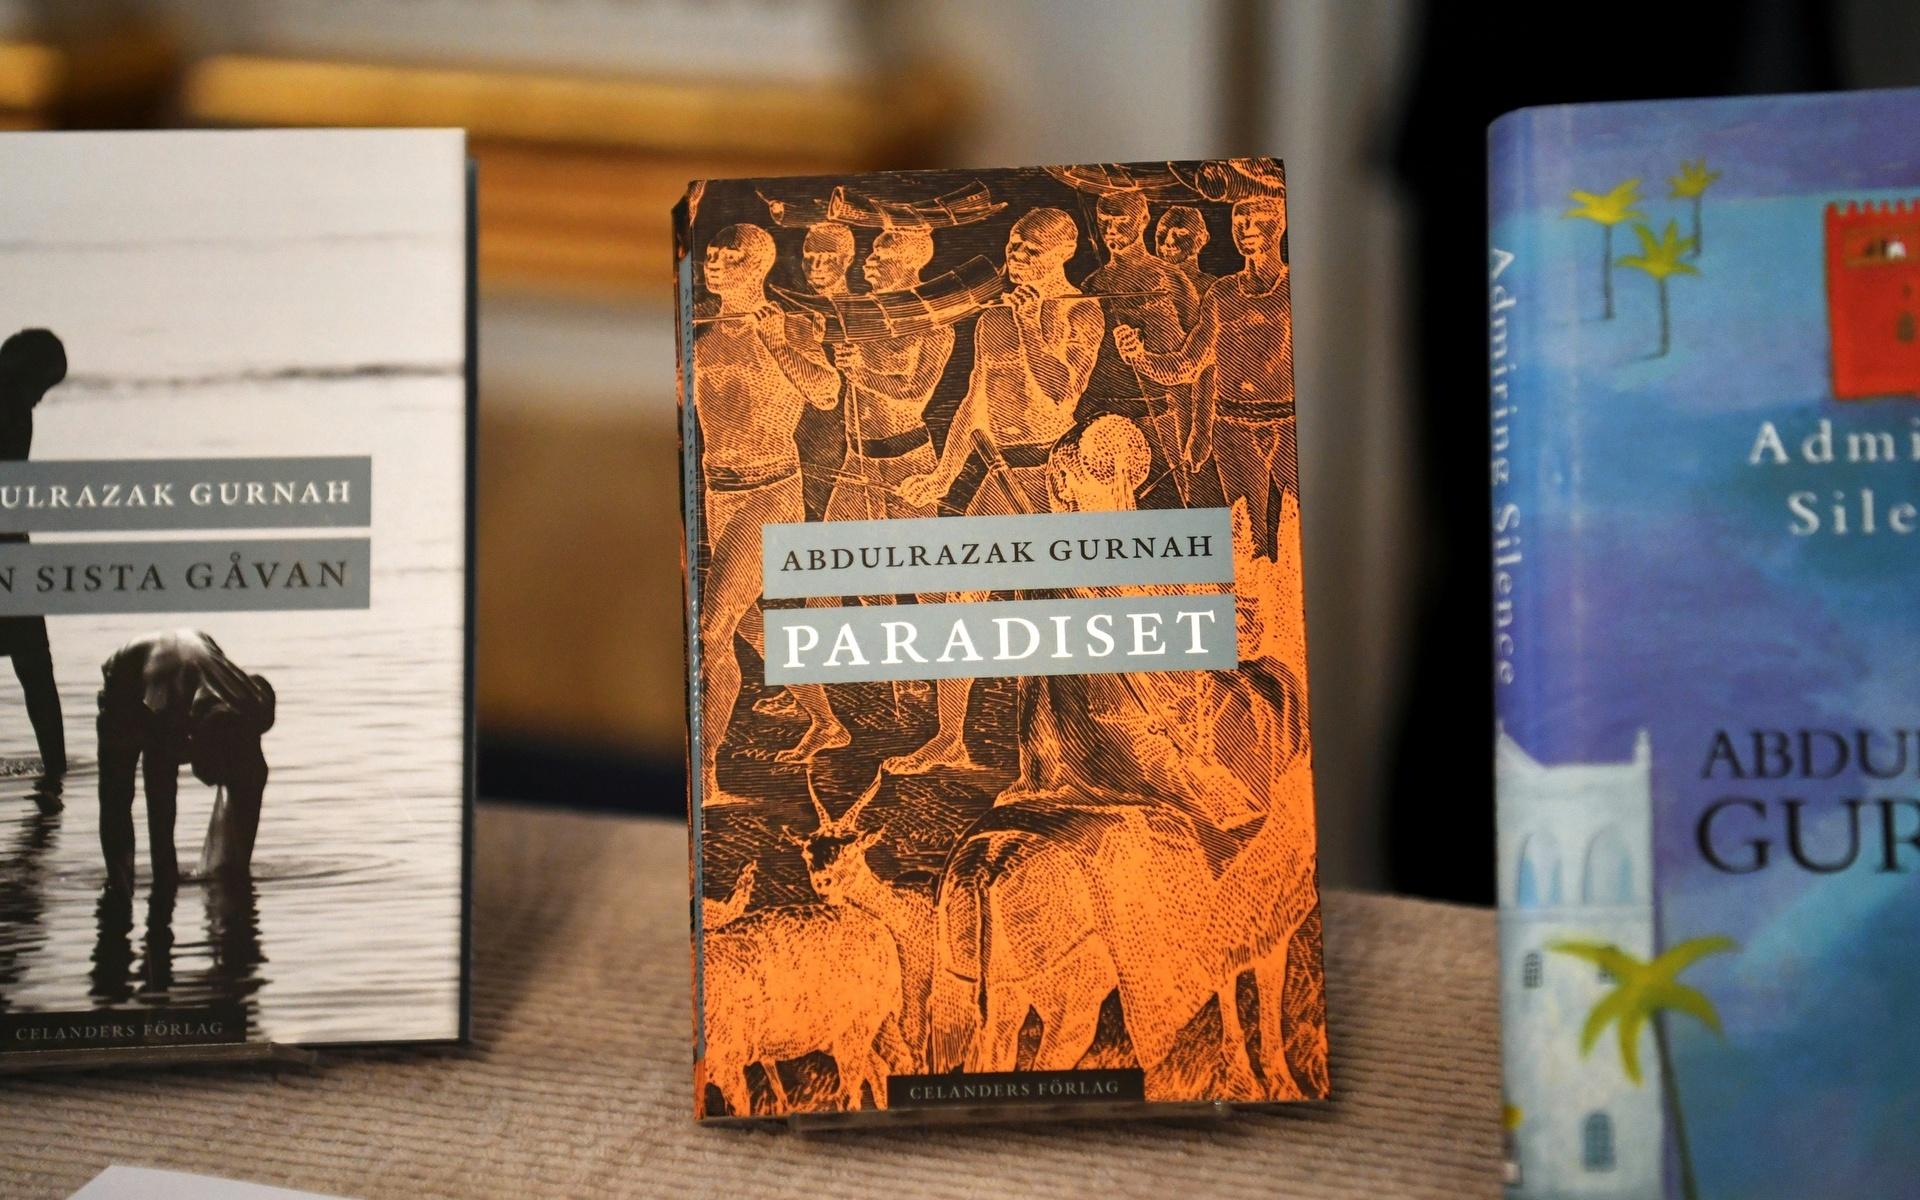 Böcker skrivna av Nobelpristagaren Abdulrazak Gurnah. Han har publicerat ett tiotal romaner och ett antal noveller, varav två är översatta till svenska,  ”Paradiset” (2012) och ”Den sista gåvan” (2015). 